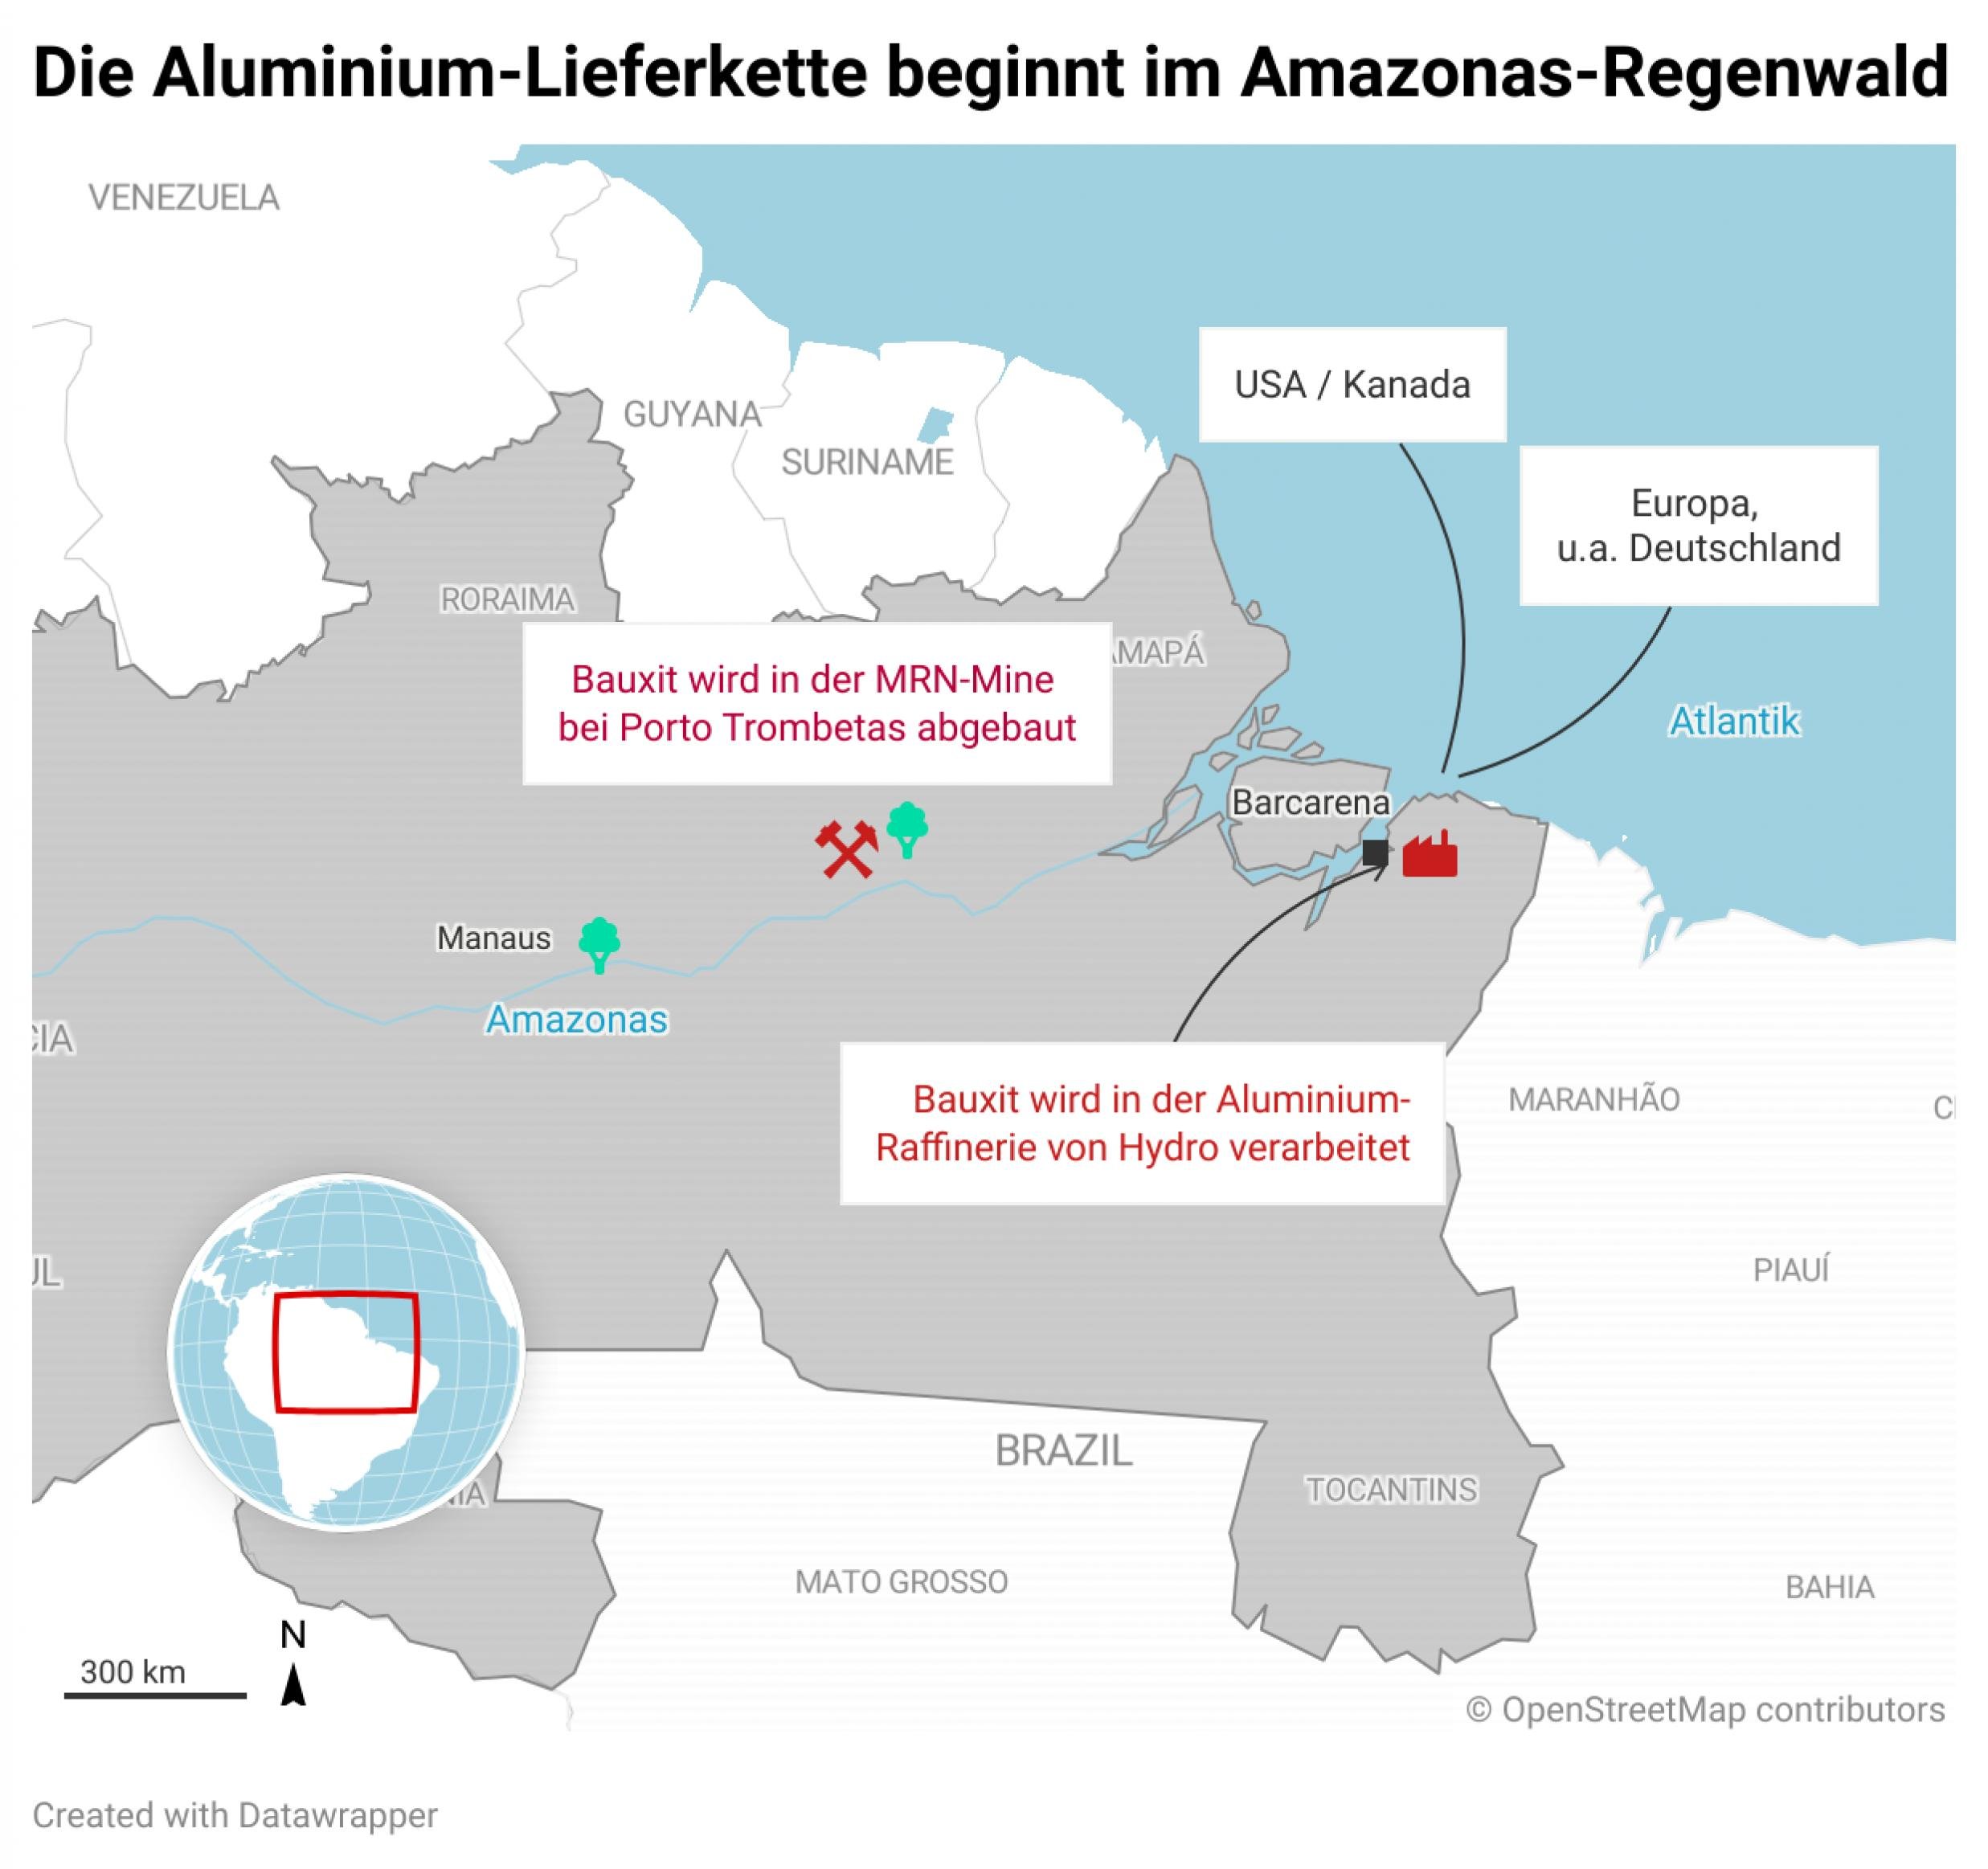 Eine Landkarte mit einem Ausschnitt des Amazonas-Gebietes. Verortet ist die Bauxit-Mine sowie die Aluminium-Raffinerie. Pfeile weisen in die USA sowie nach Europa / Deutschland.